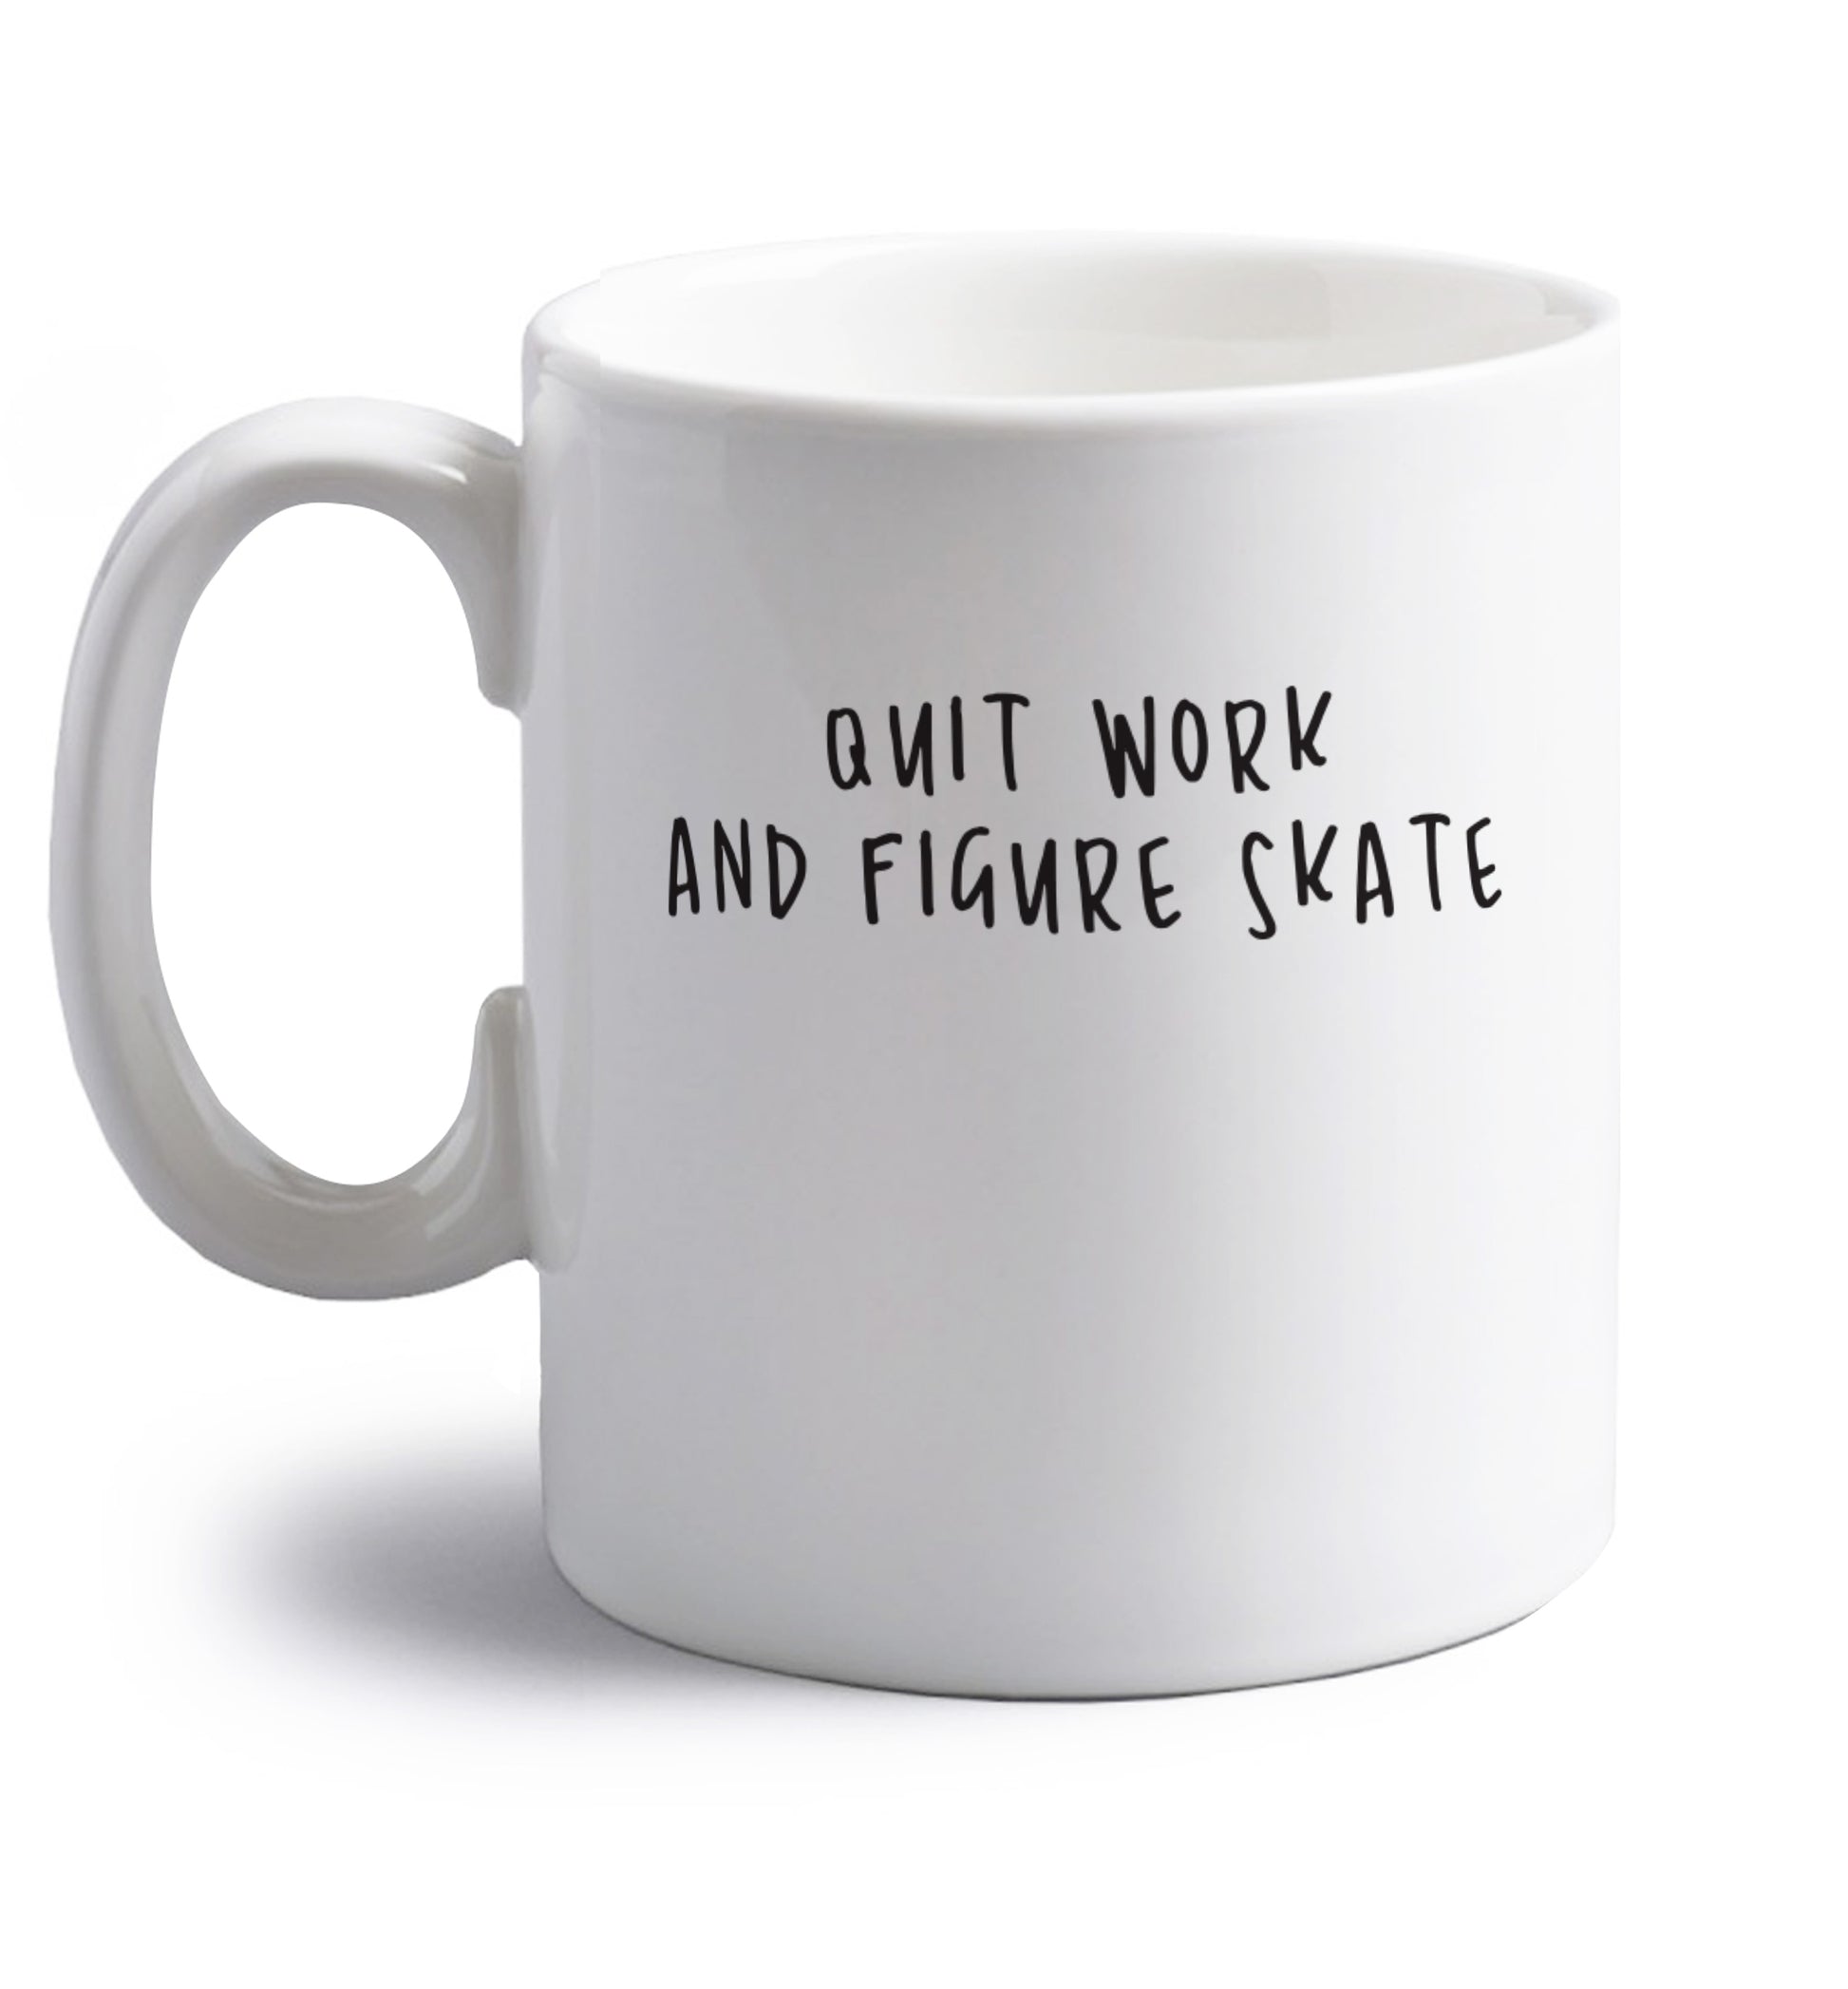 Quit work figure skate right handed white ceramic mug 